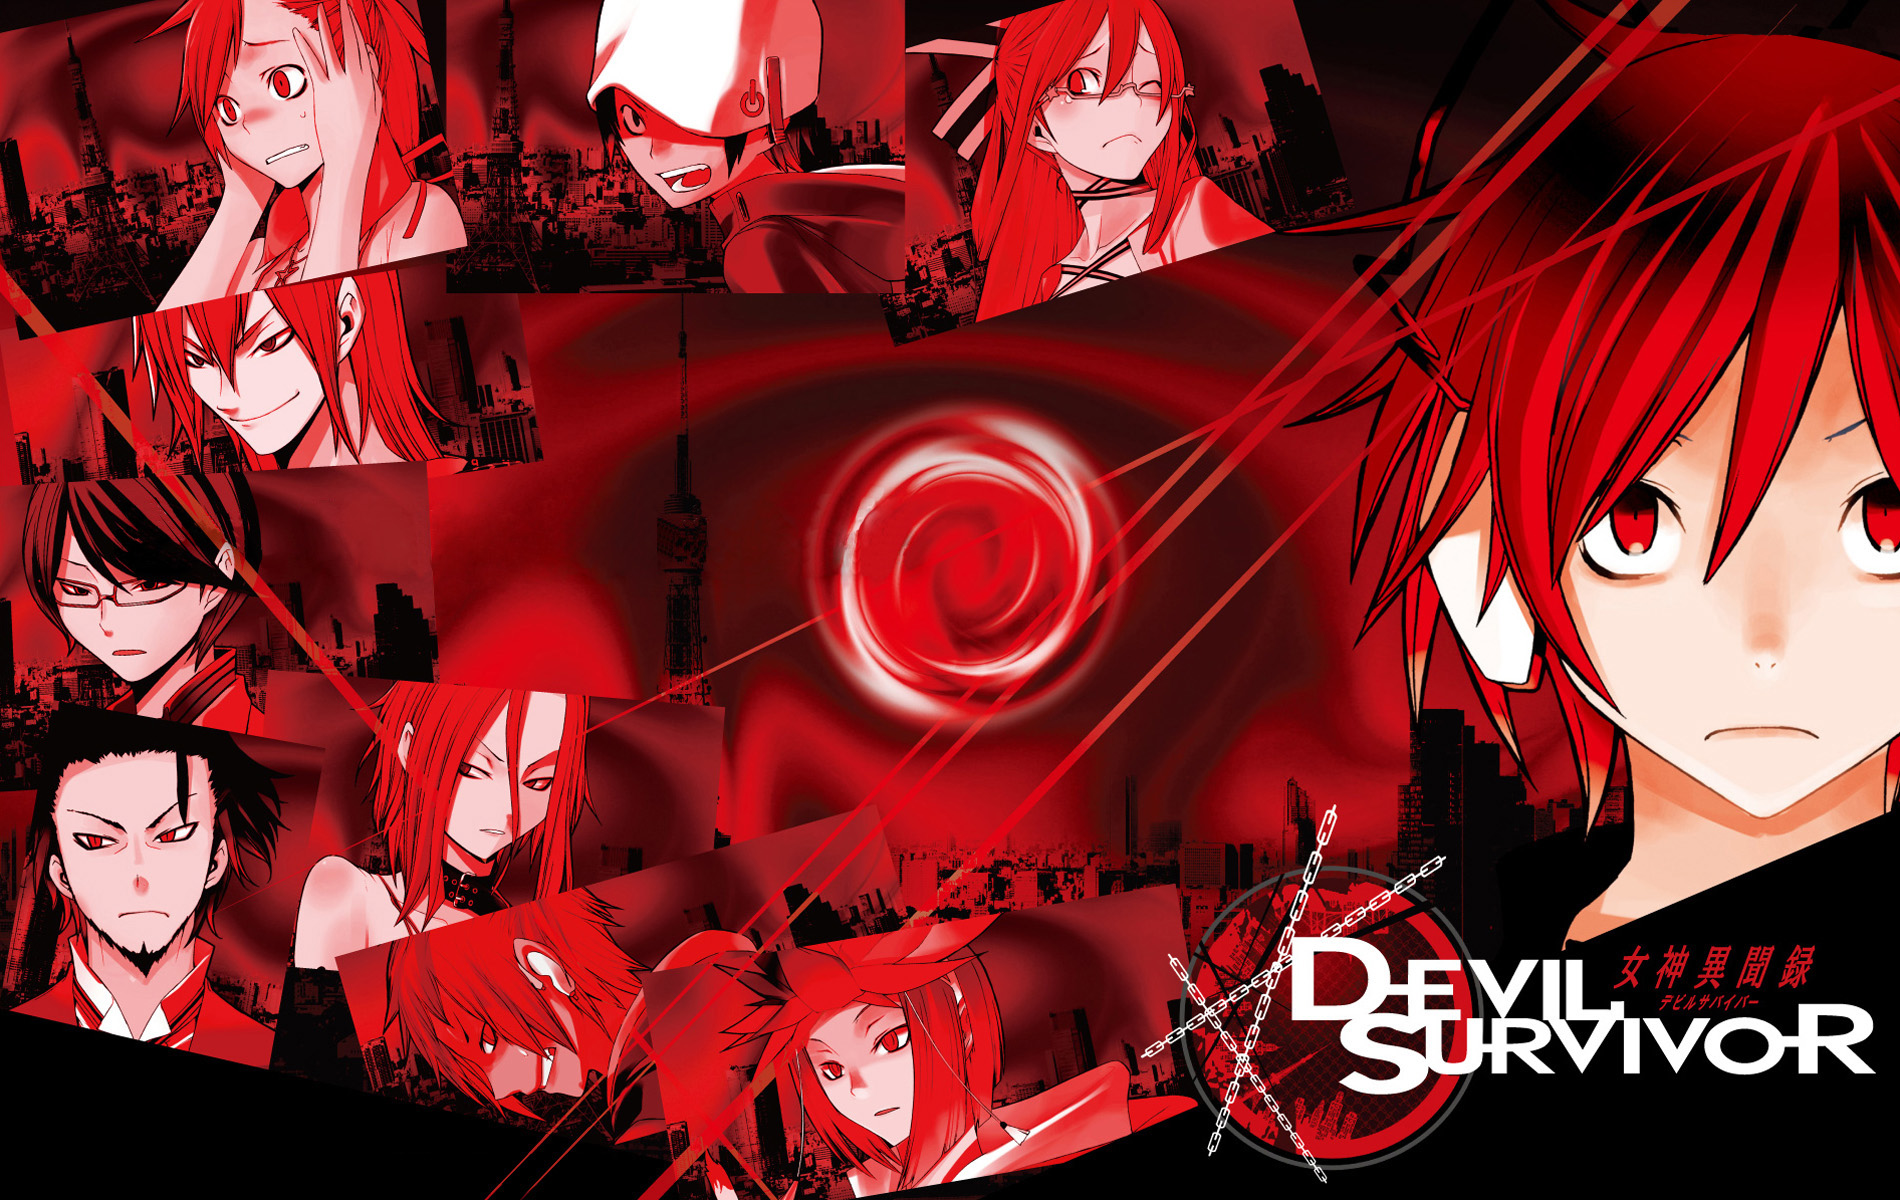 Alcor Anguished One  Shin Megami Tensei Devil Survivor 2  Zerochan  Anime Image Board Mobile